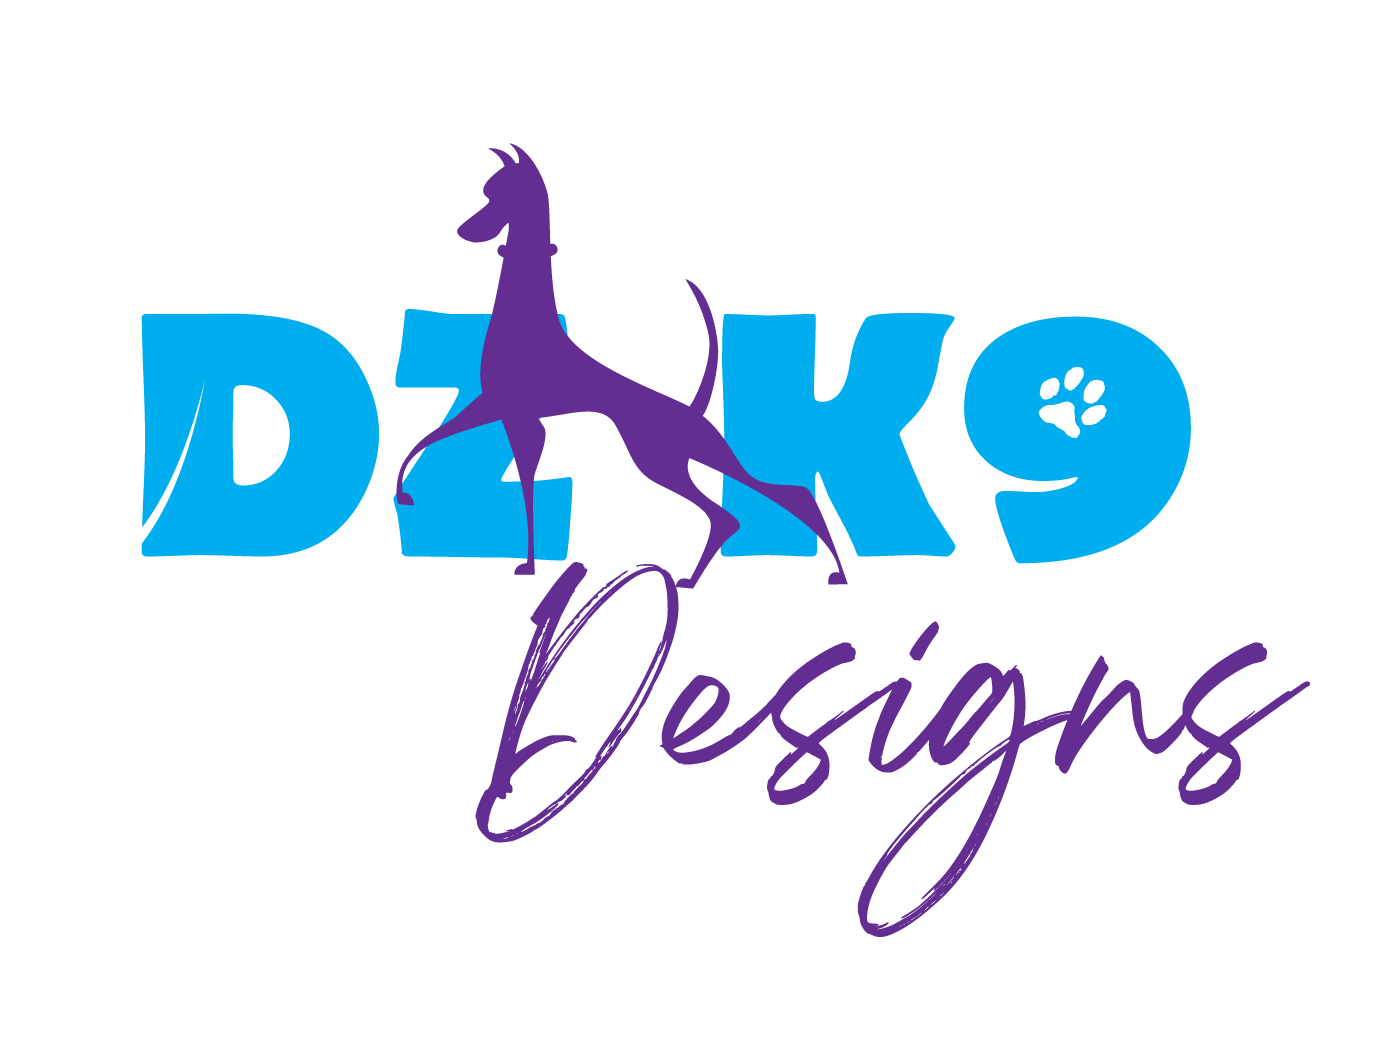 DZK9 Designs